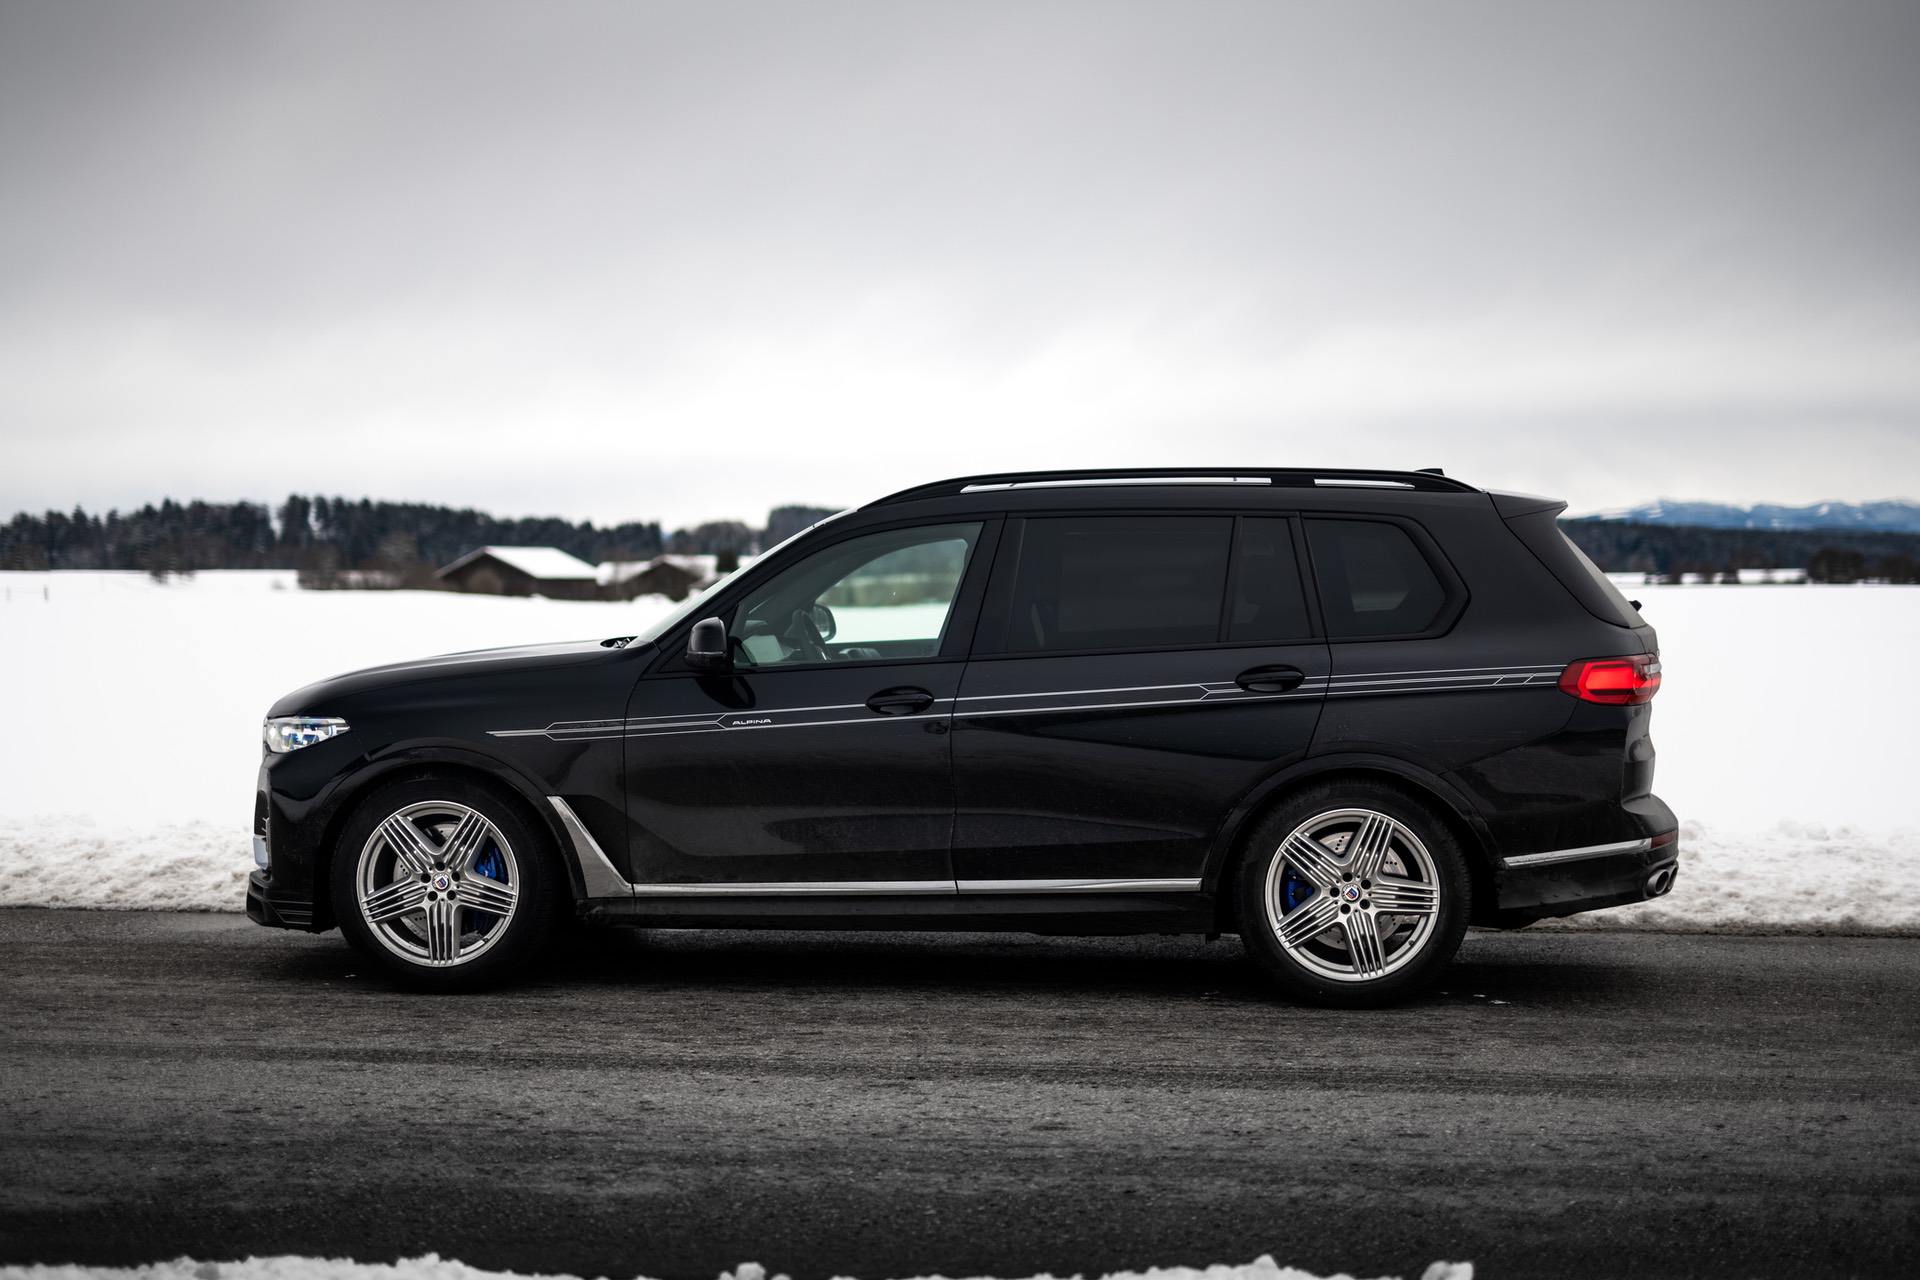 TEST DRIVE: 2021 BMW ALPINA XB7 - Best SUV Today?